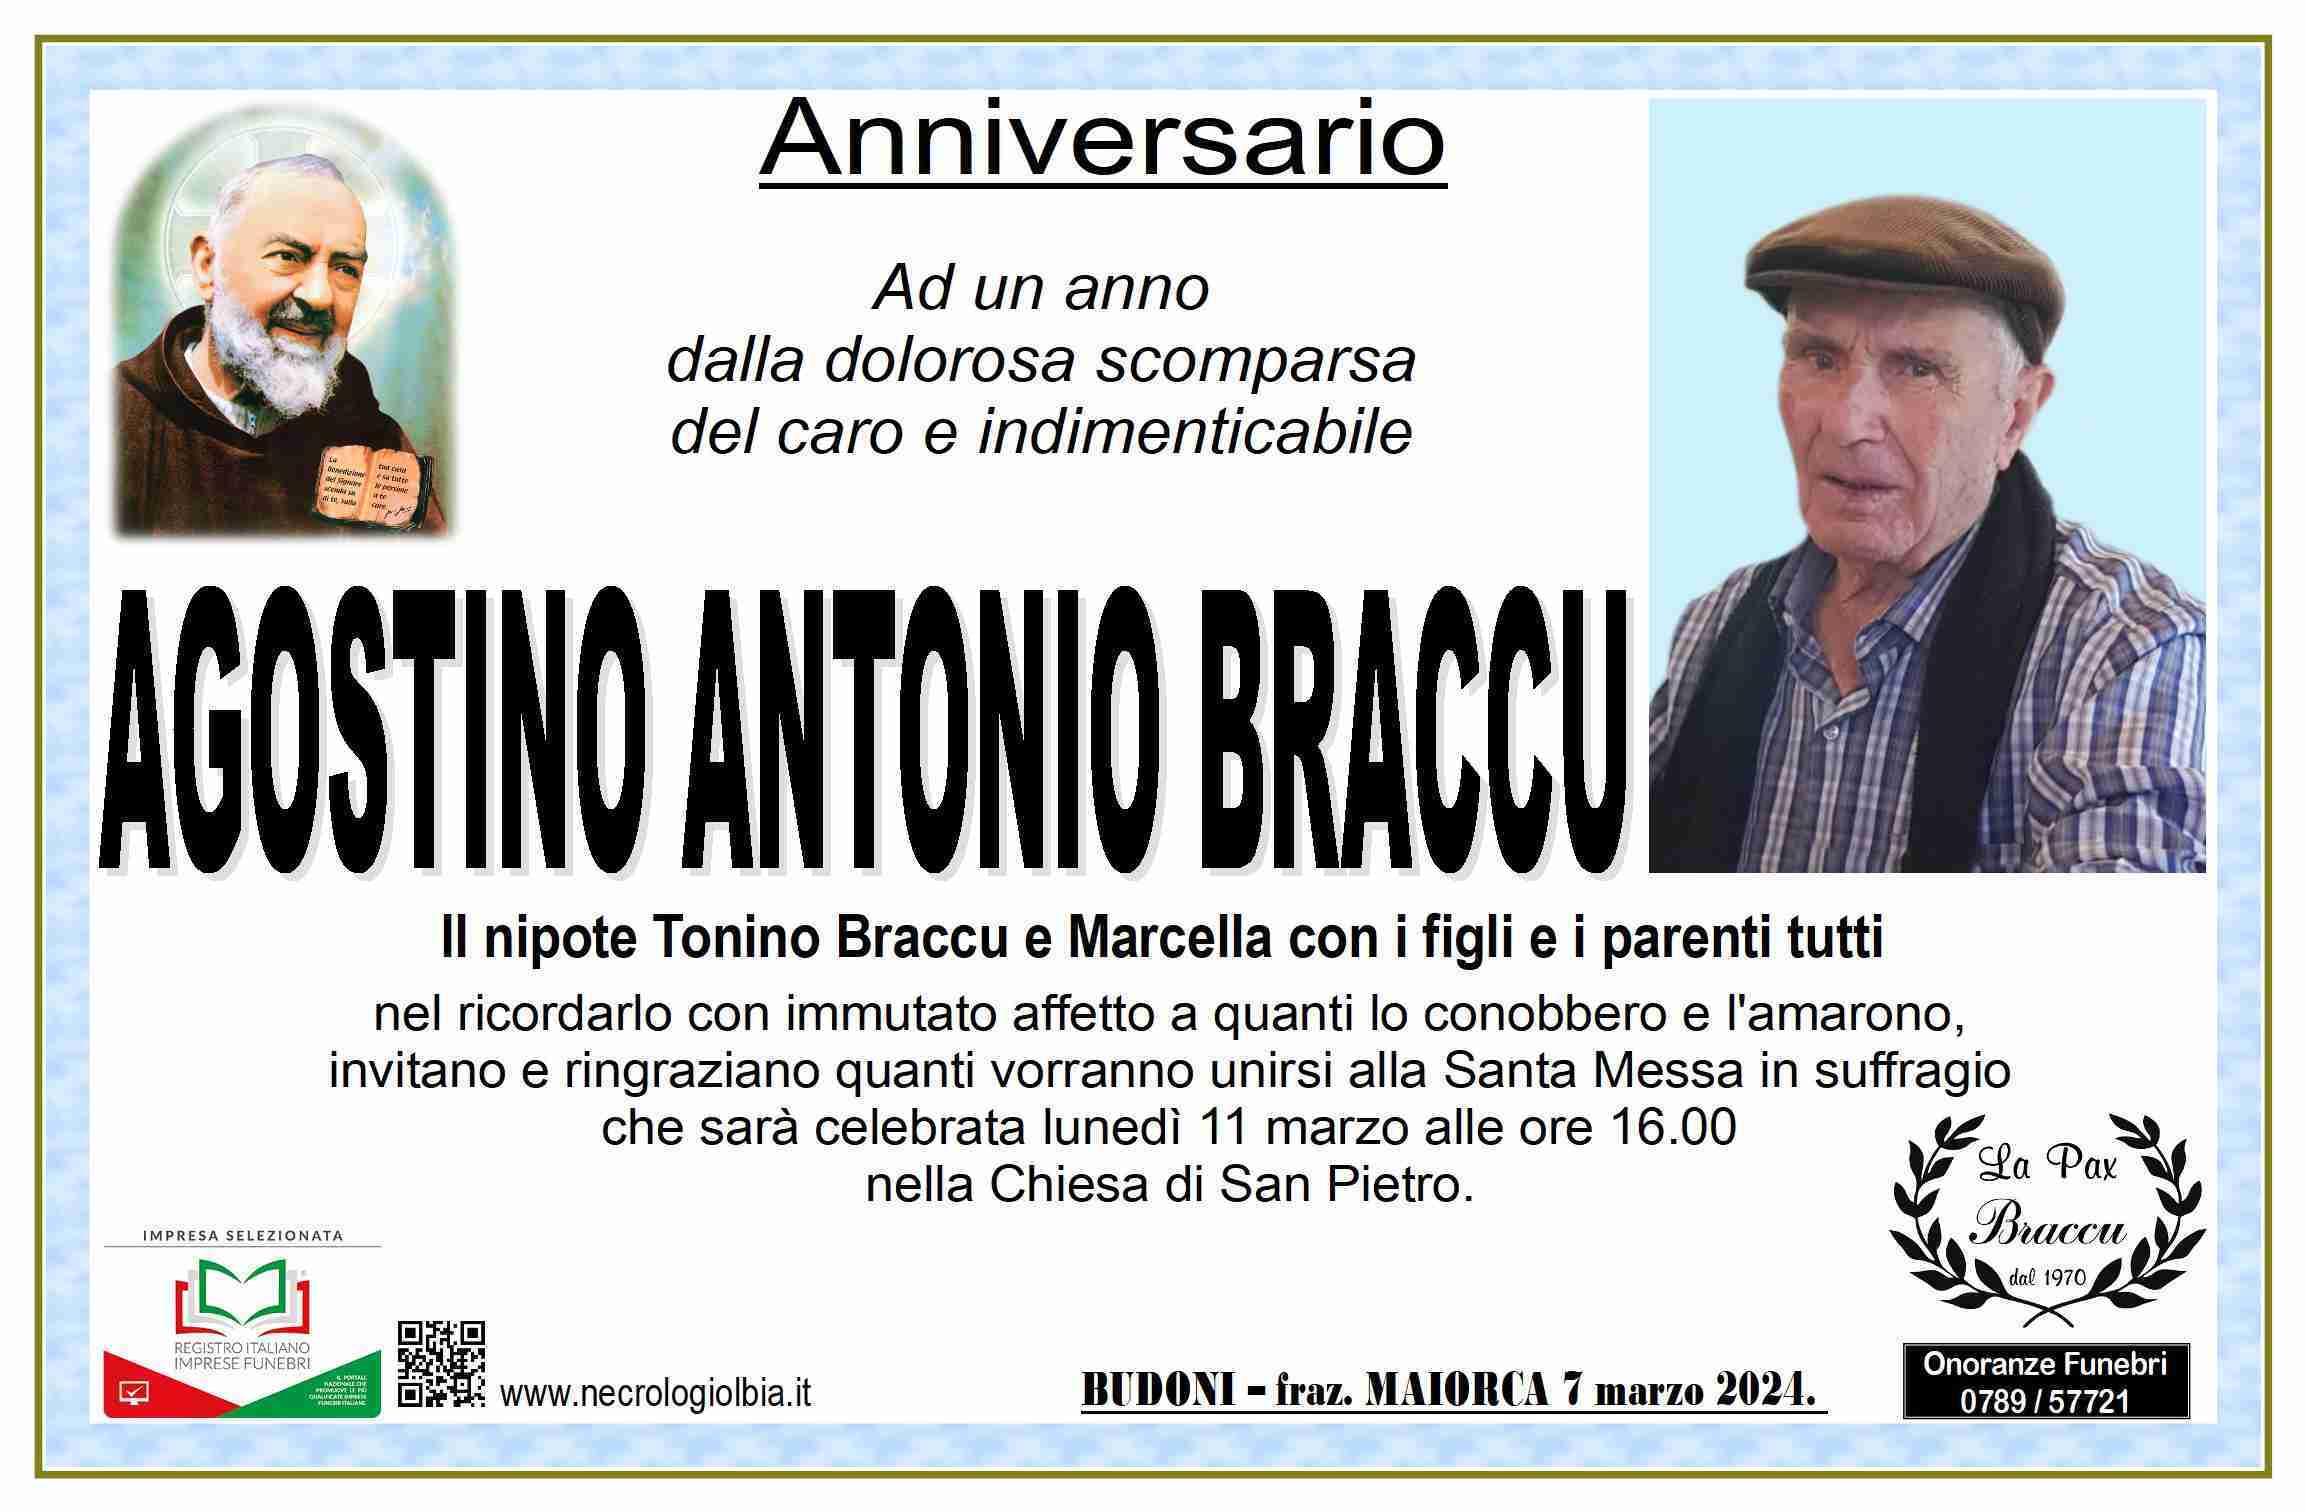 Agostino Antonio Braccu